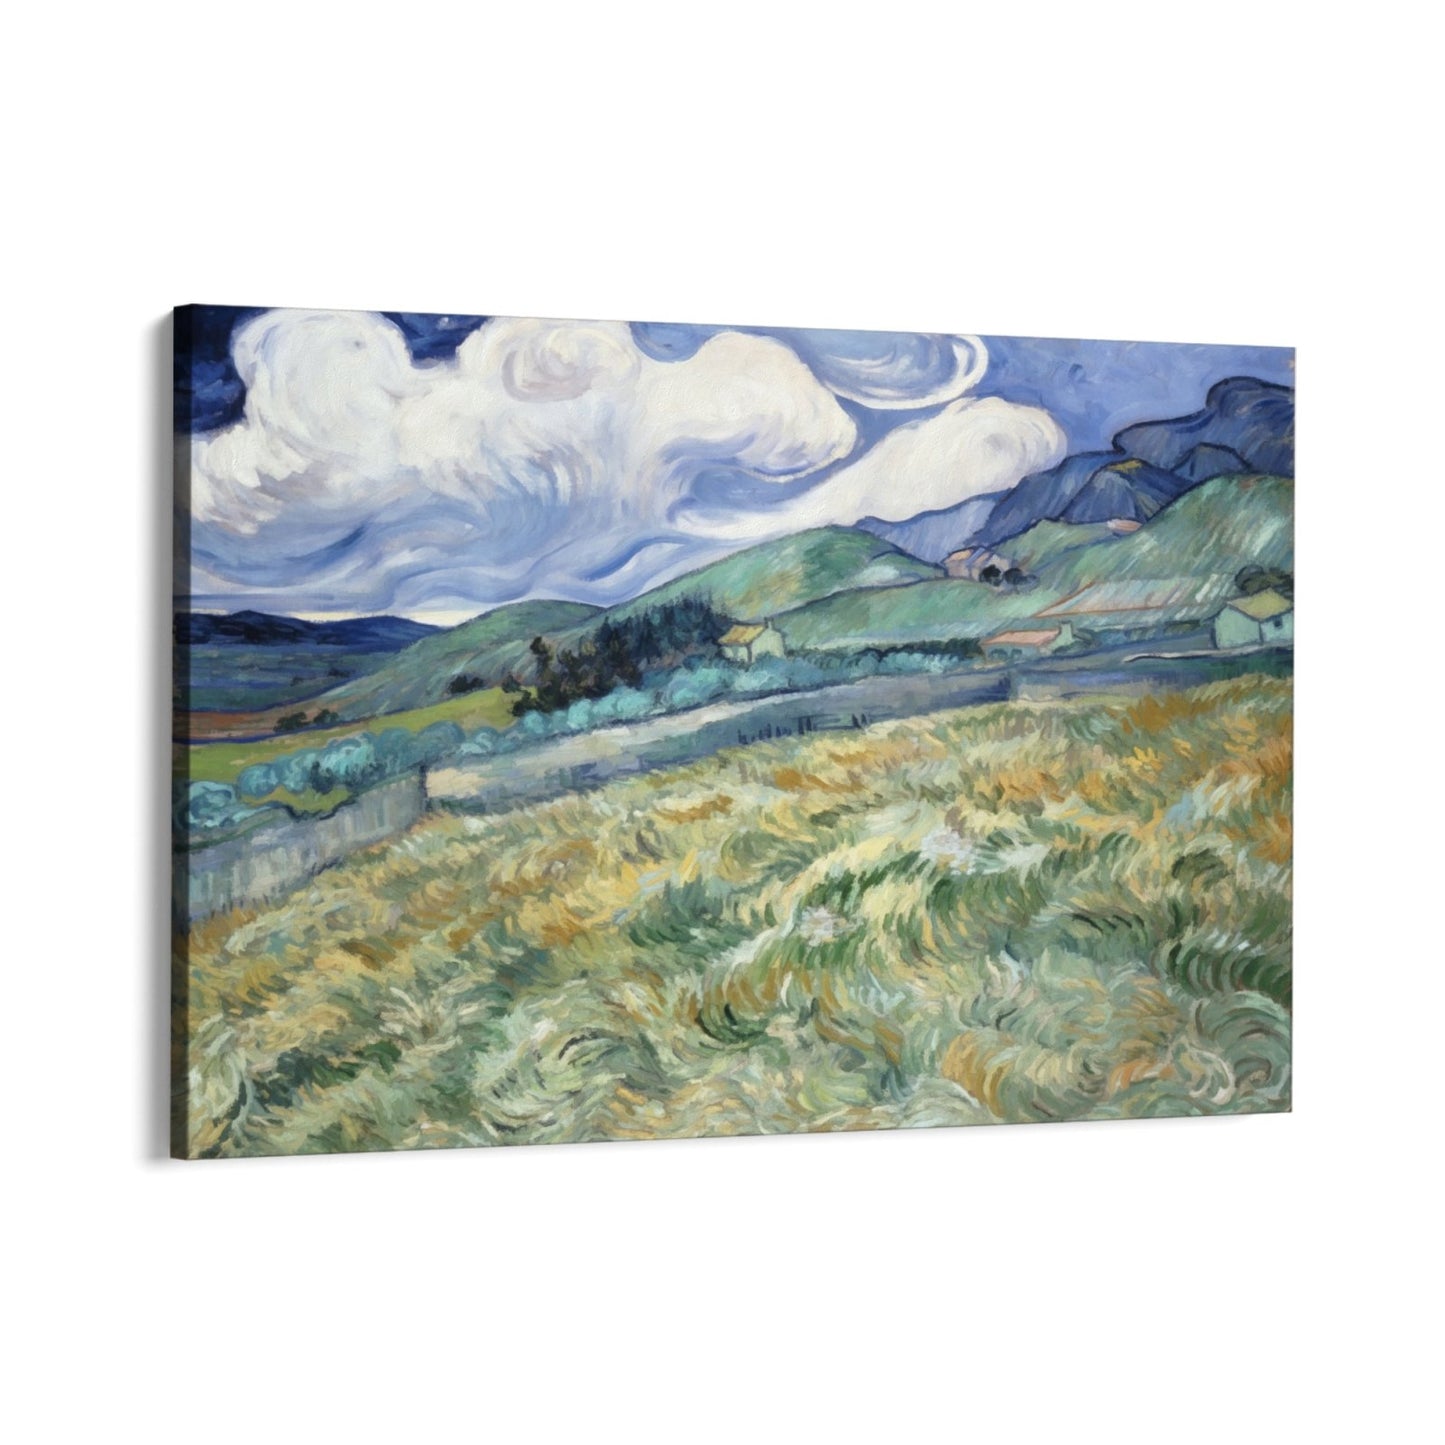 Champ de blé et montagnes 1889, Vincent Van Gogh